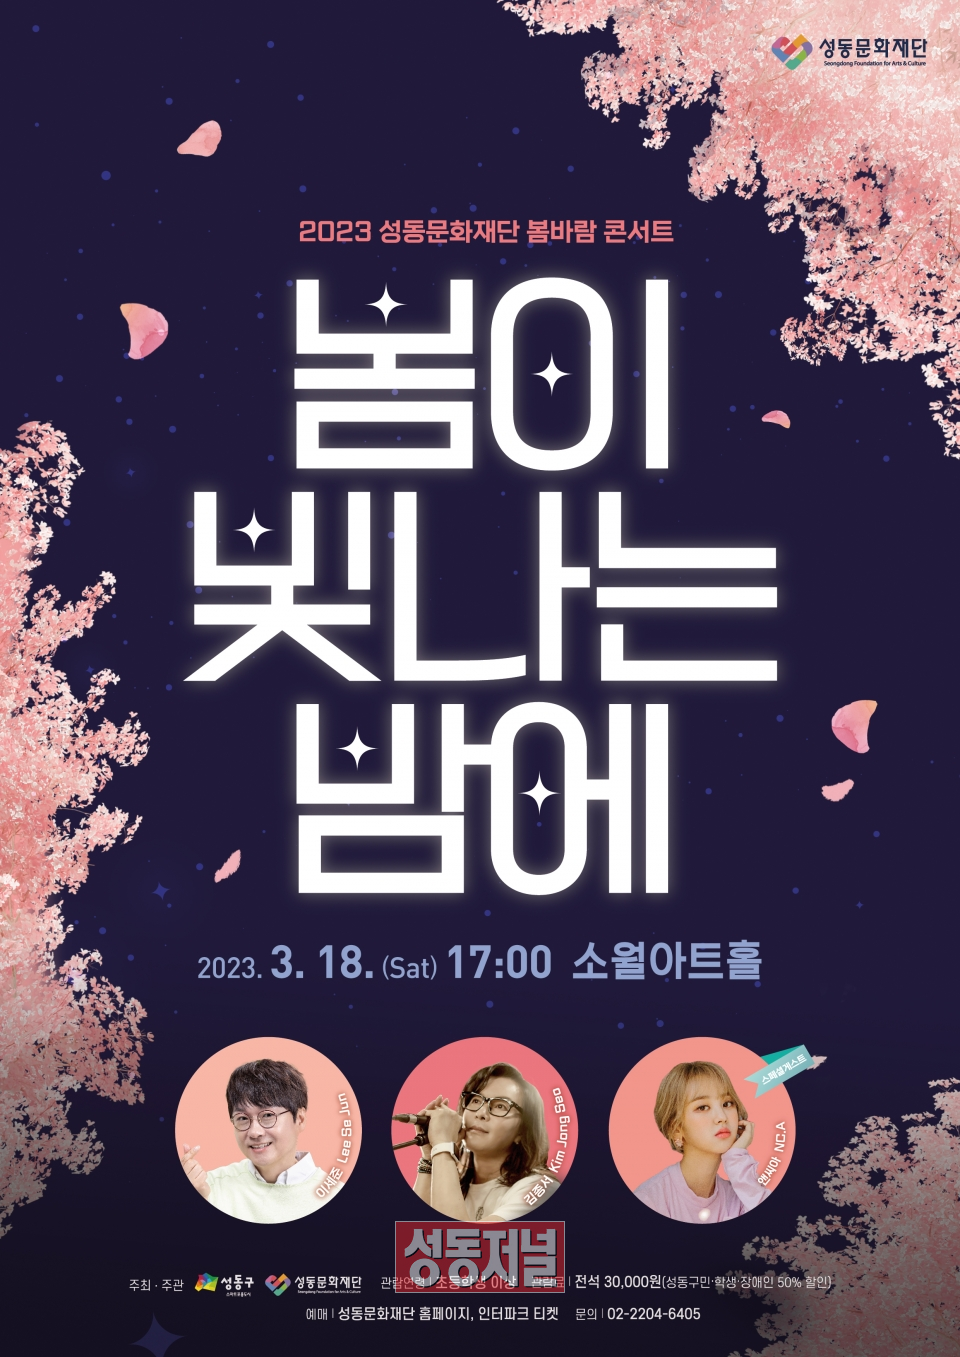 유리상자 이세준, 김종서, 앤씨아와 함께하는 2023년 성동문화재단 봄바람 콘서트 ‘봄이 빛나는 밤에’ 포스터